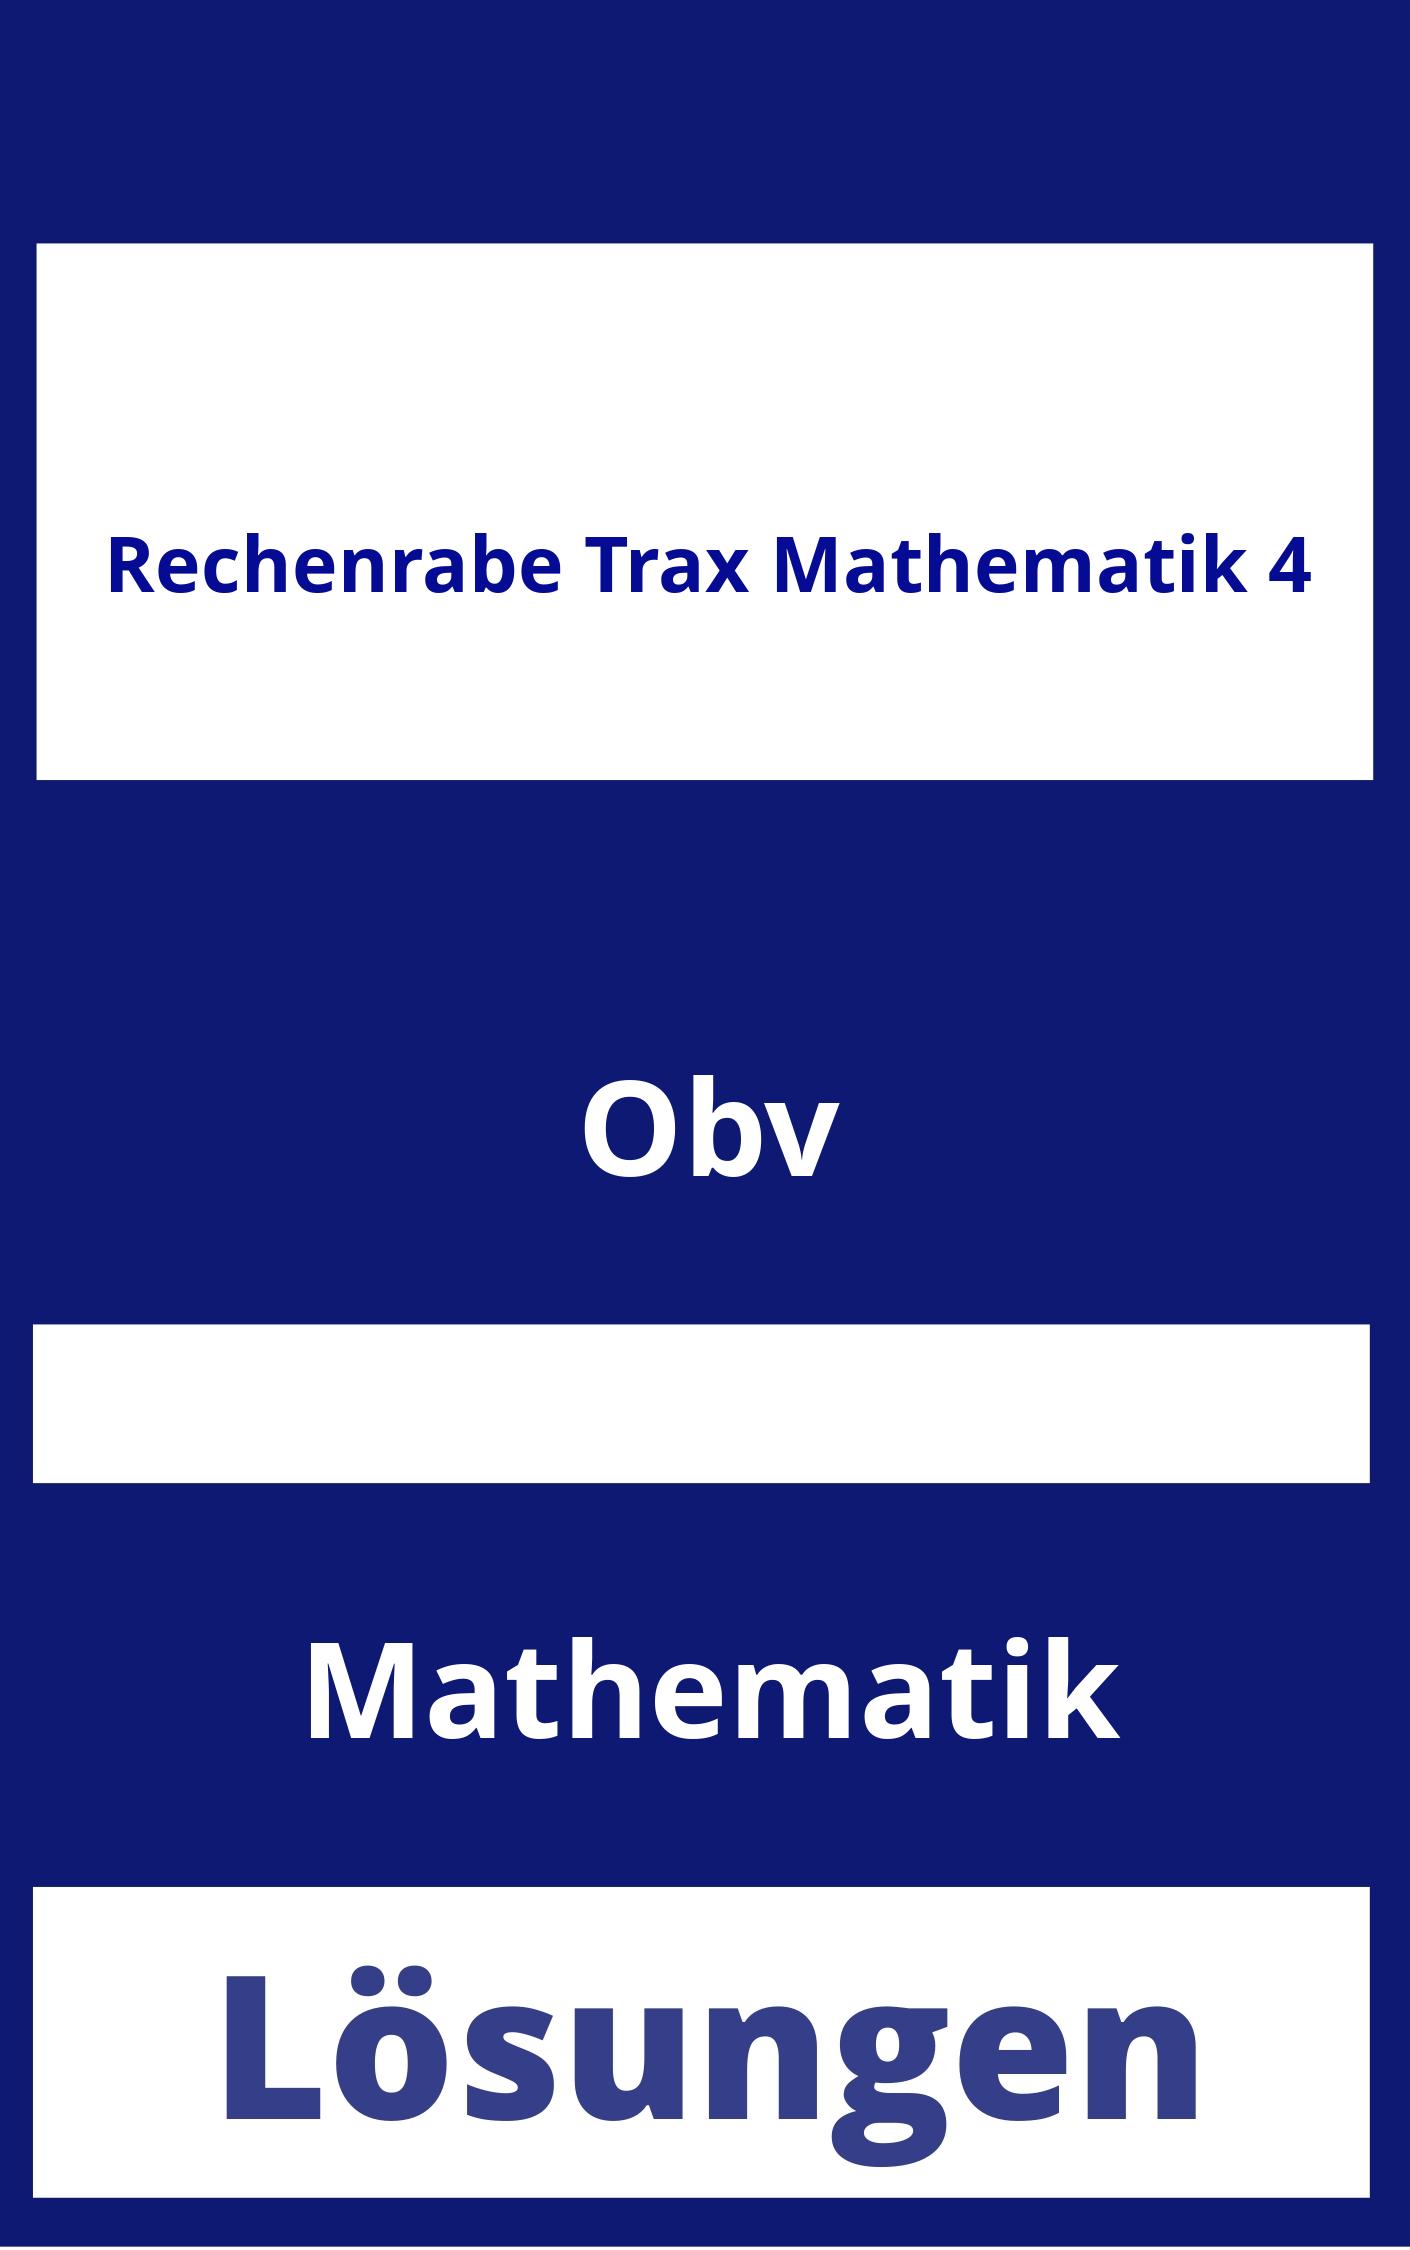 Rechenrabe Trax Mathematik 4 Lösungen PDF